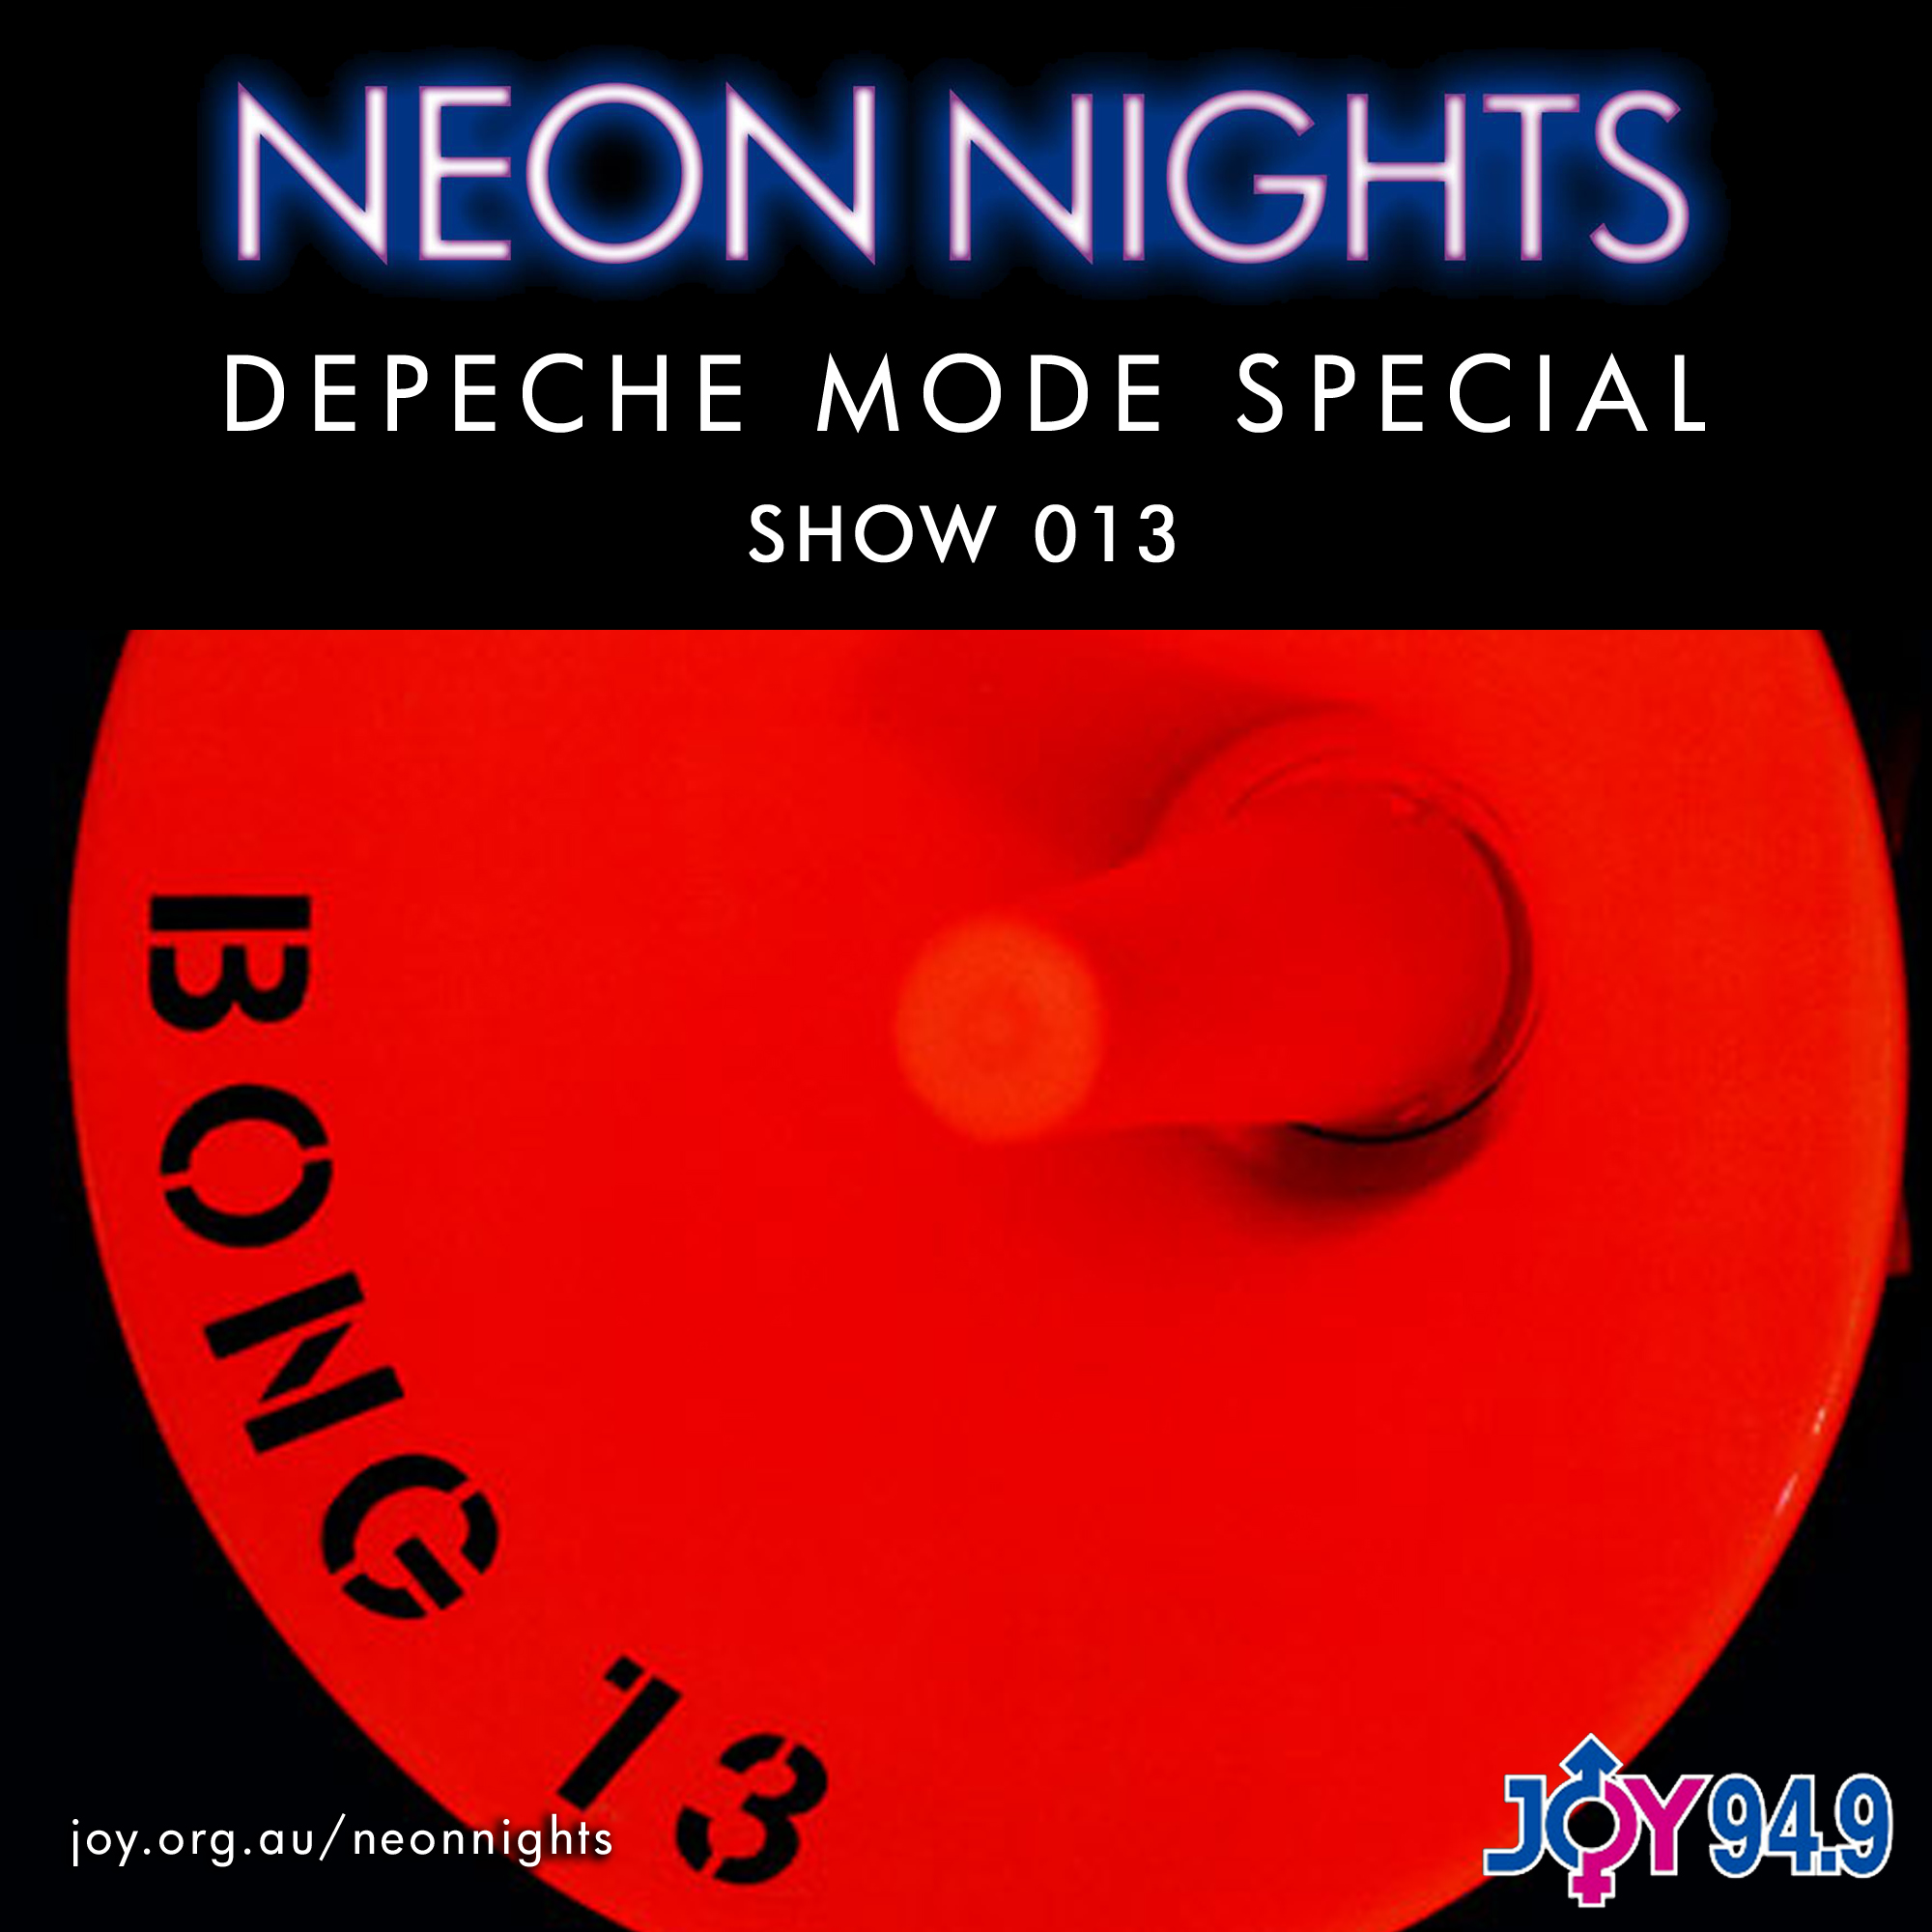 Show 013 / Depeche Mode Special